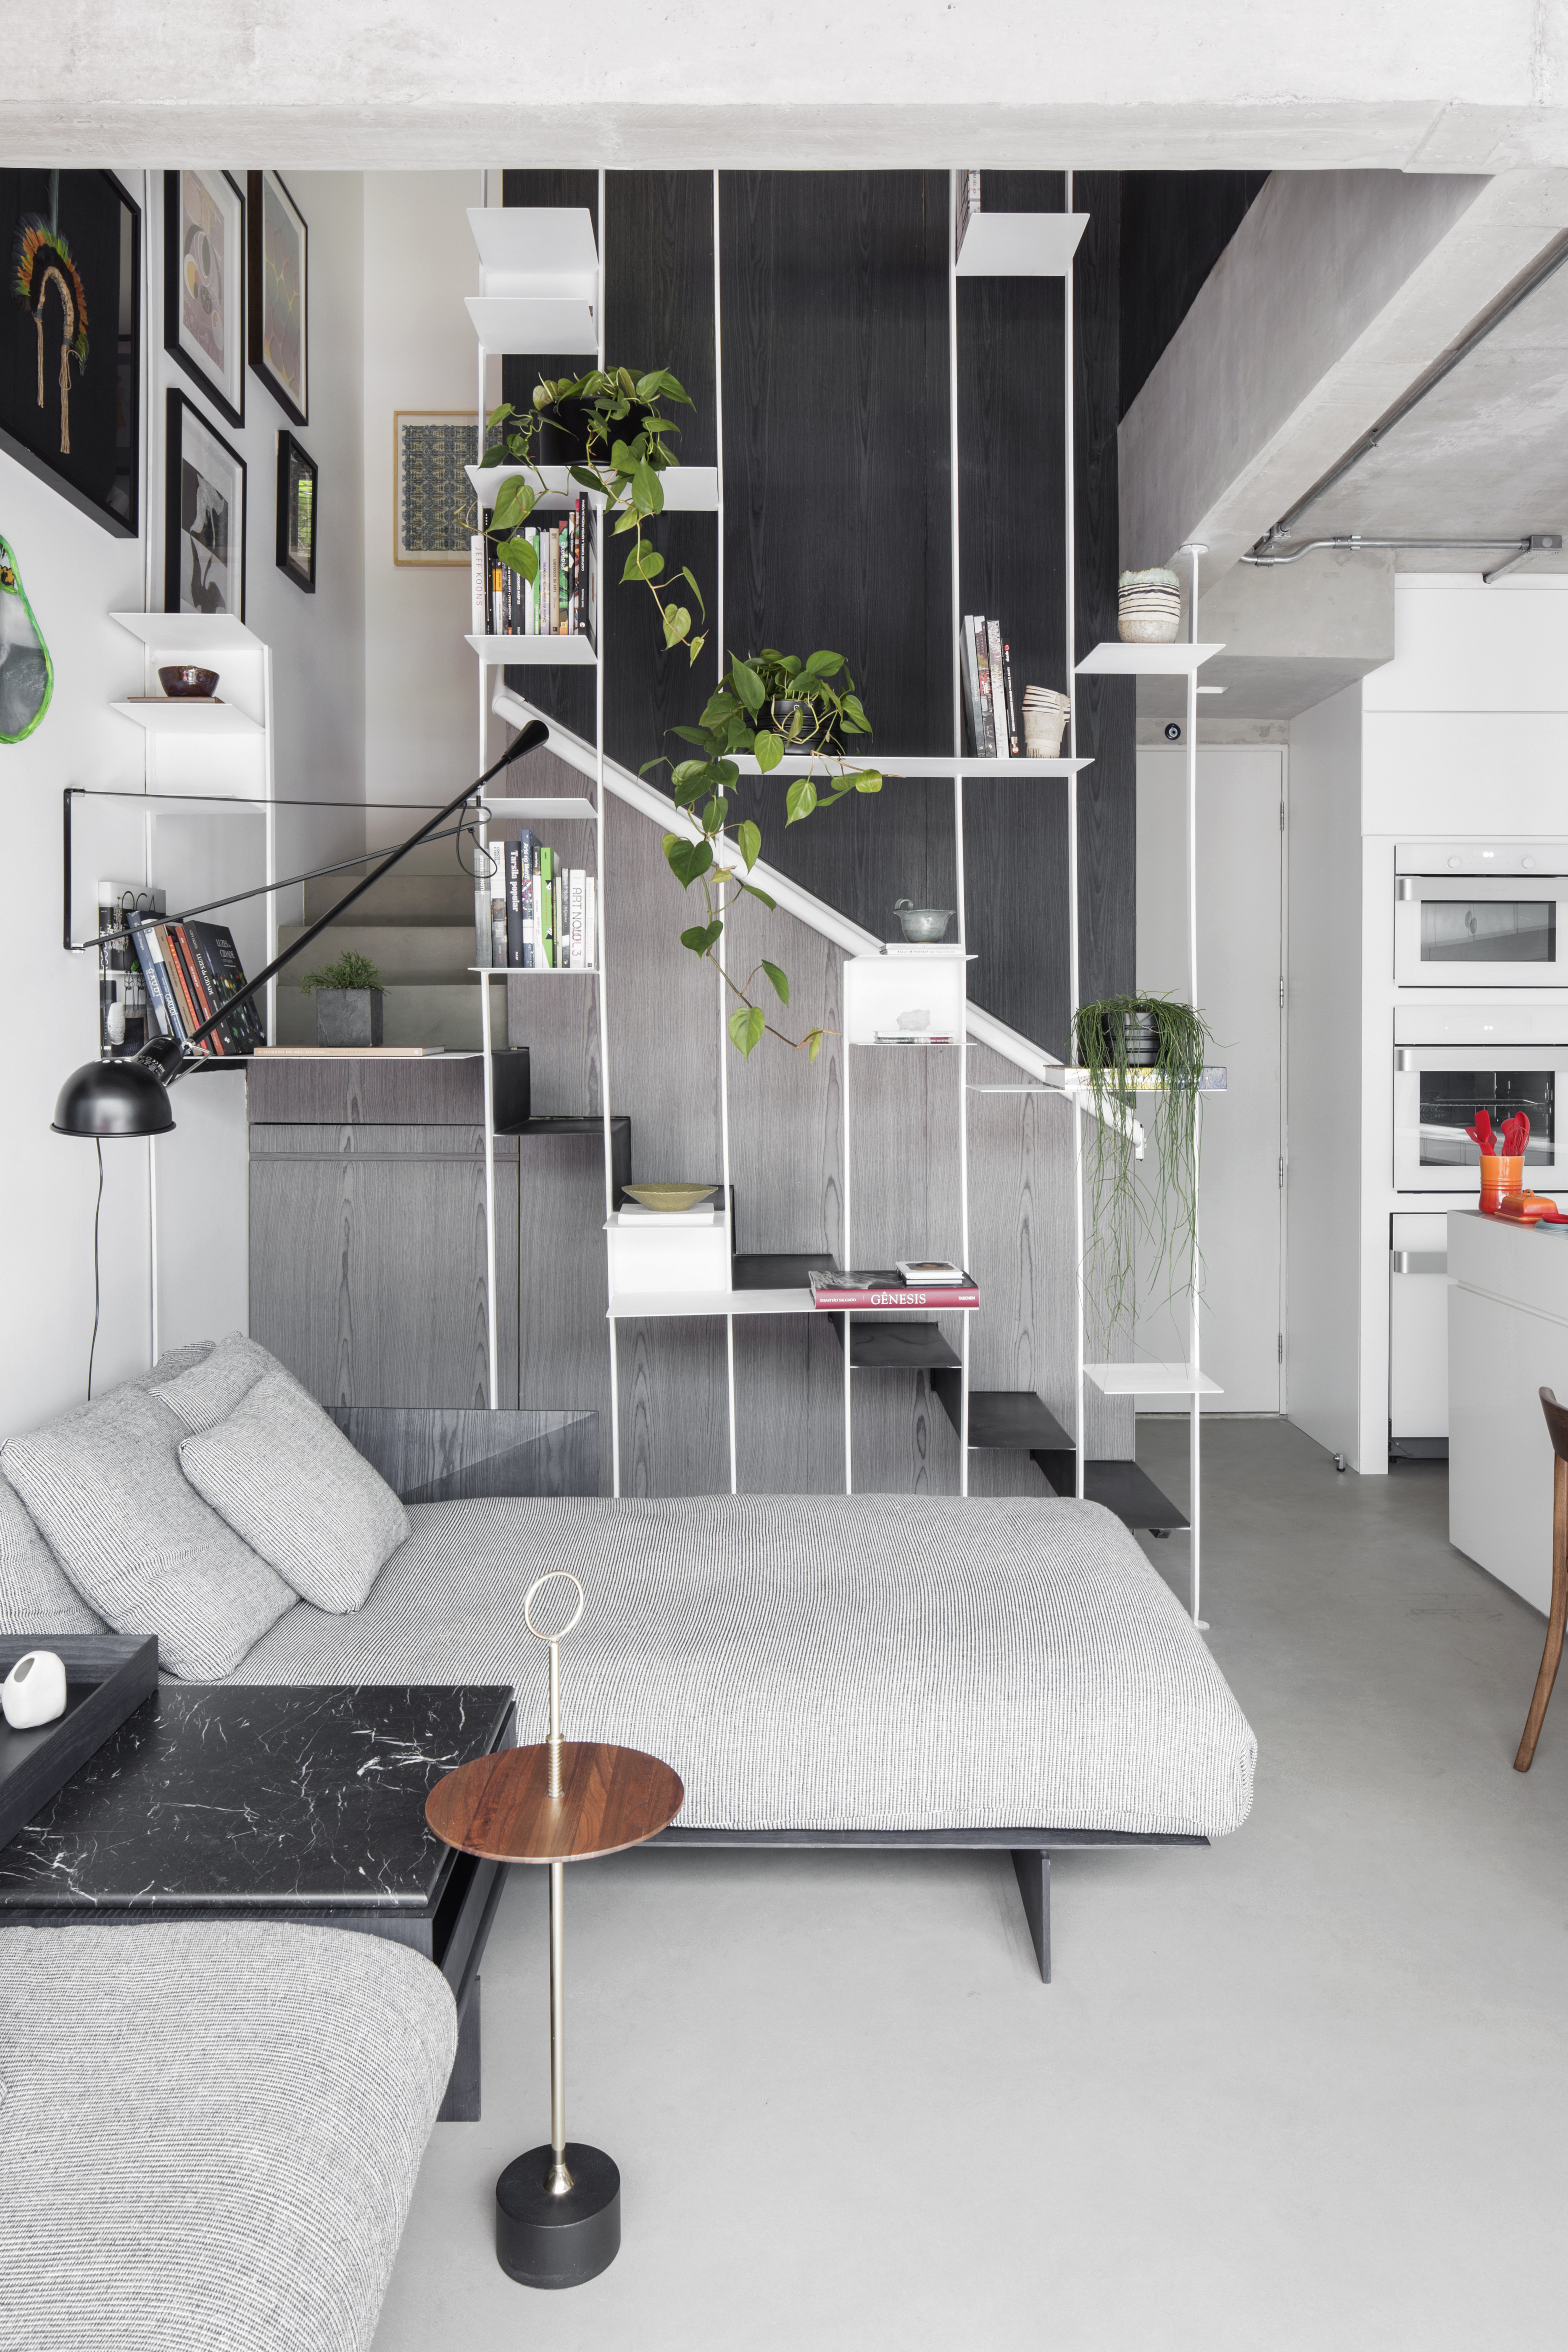 Apê térreo preto e branco tem áreas sociais e de trabalho mescladas. Projeto de Nati Minas & Studio. Na foto, sofá cinza, escada com guarda corpo vazado com plantas.